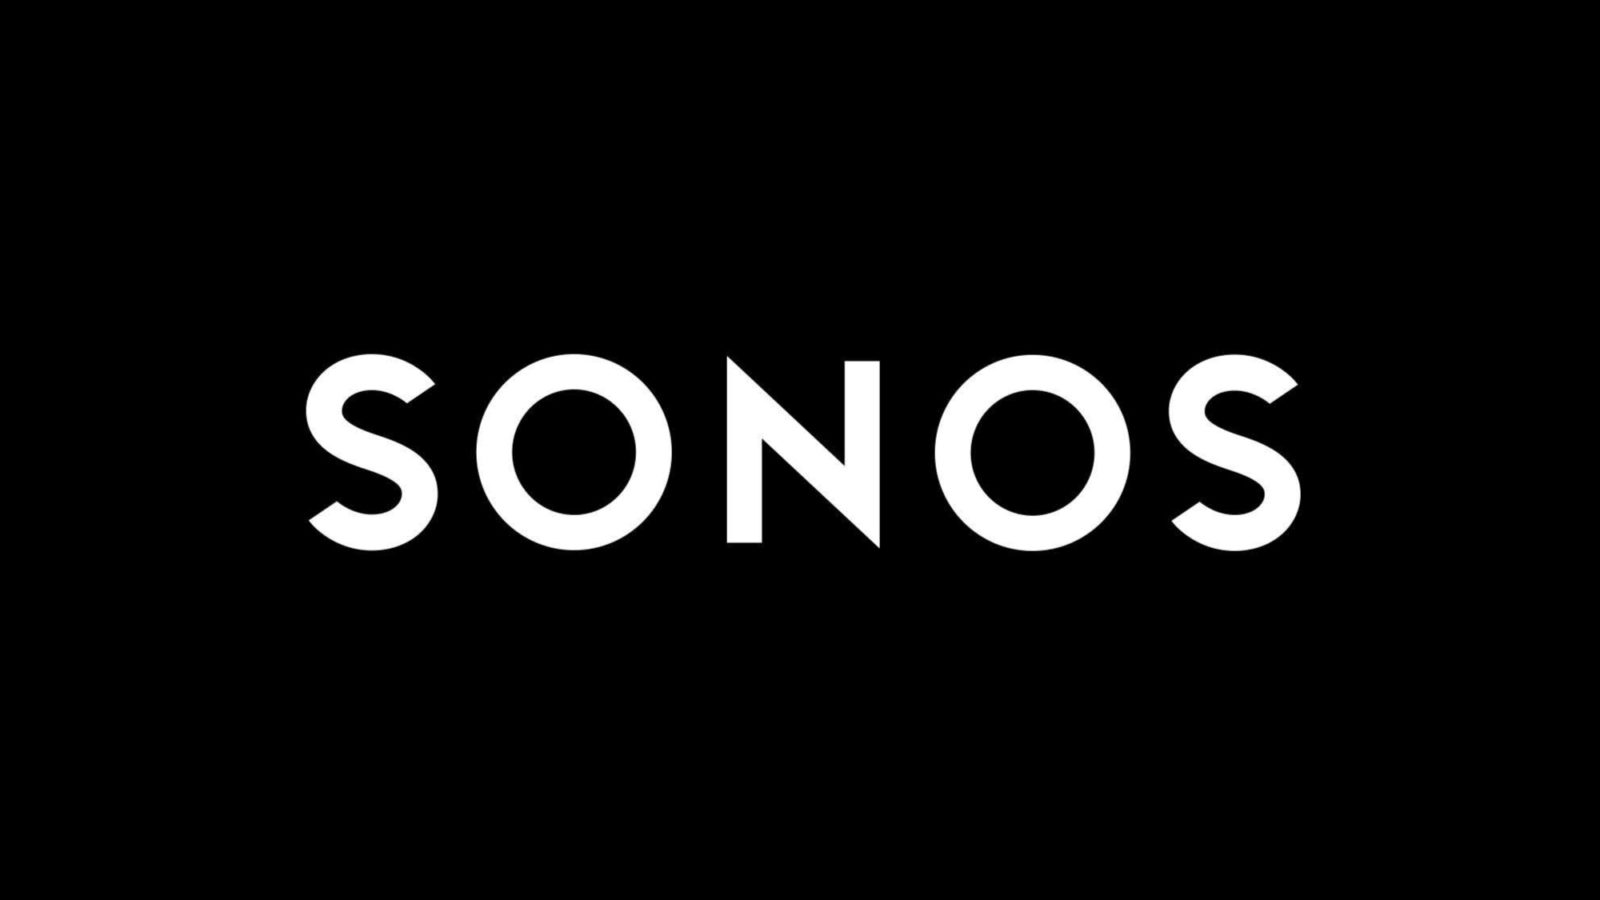 Stille overname wijst op langverwachte koptelefoon van Sonos